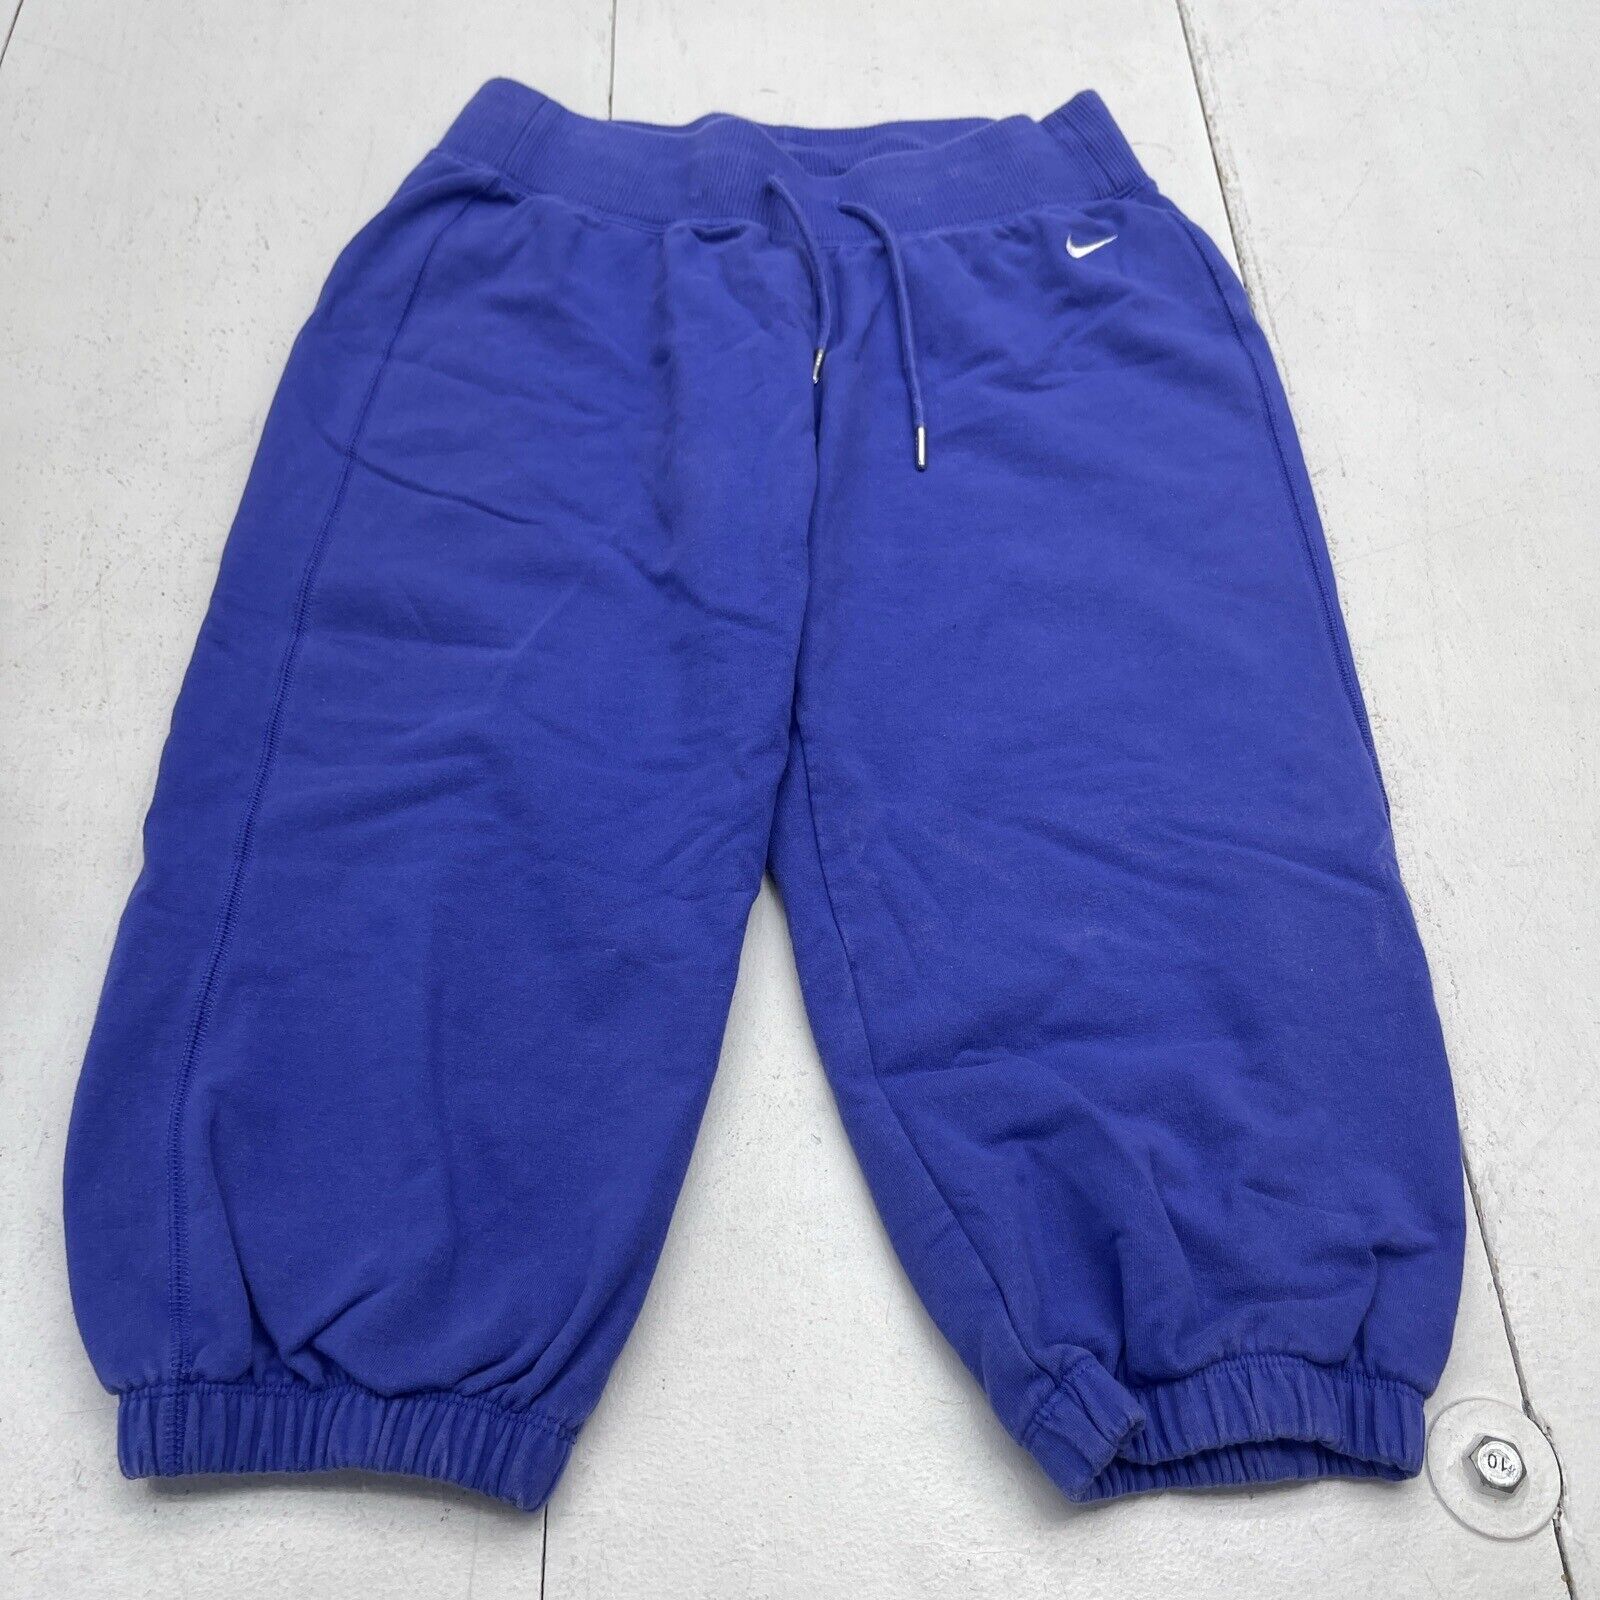 Nike Blue Jogger Sweatpants Slim Fit Tapered Leg Men Size 2XL Regular -  beyond exchange